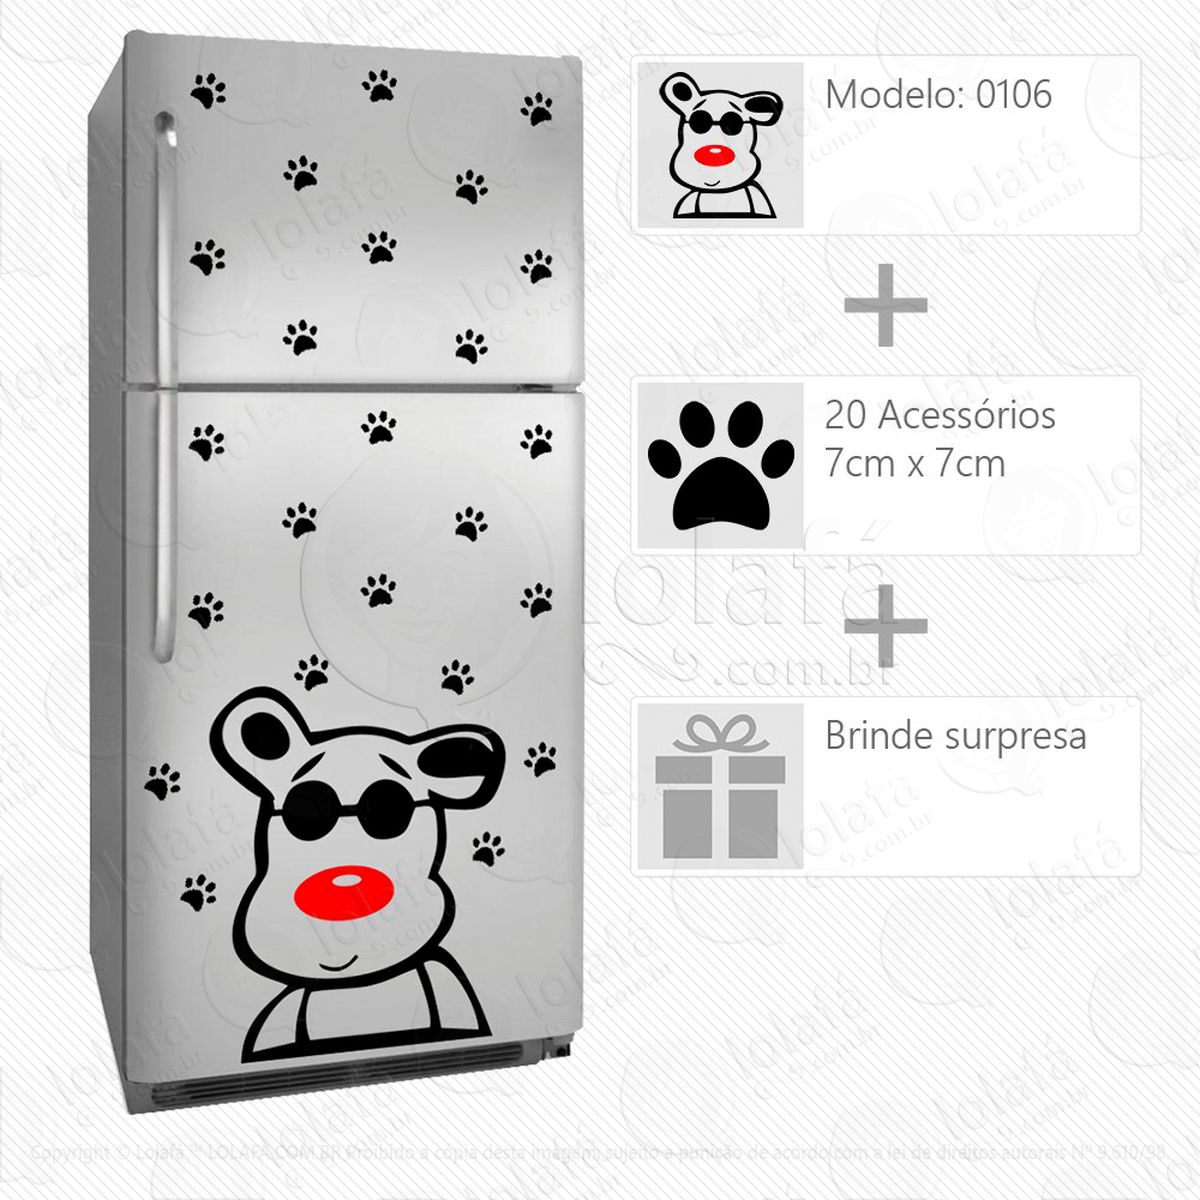 cachorro adesivo para geladeira e frigobar - mod:106